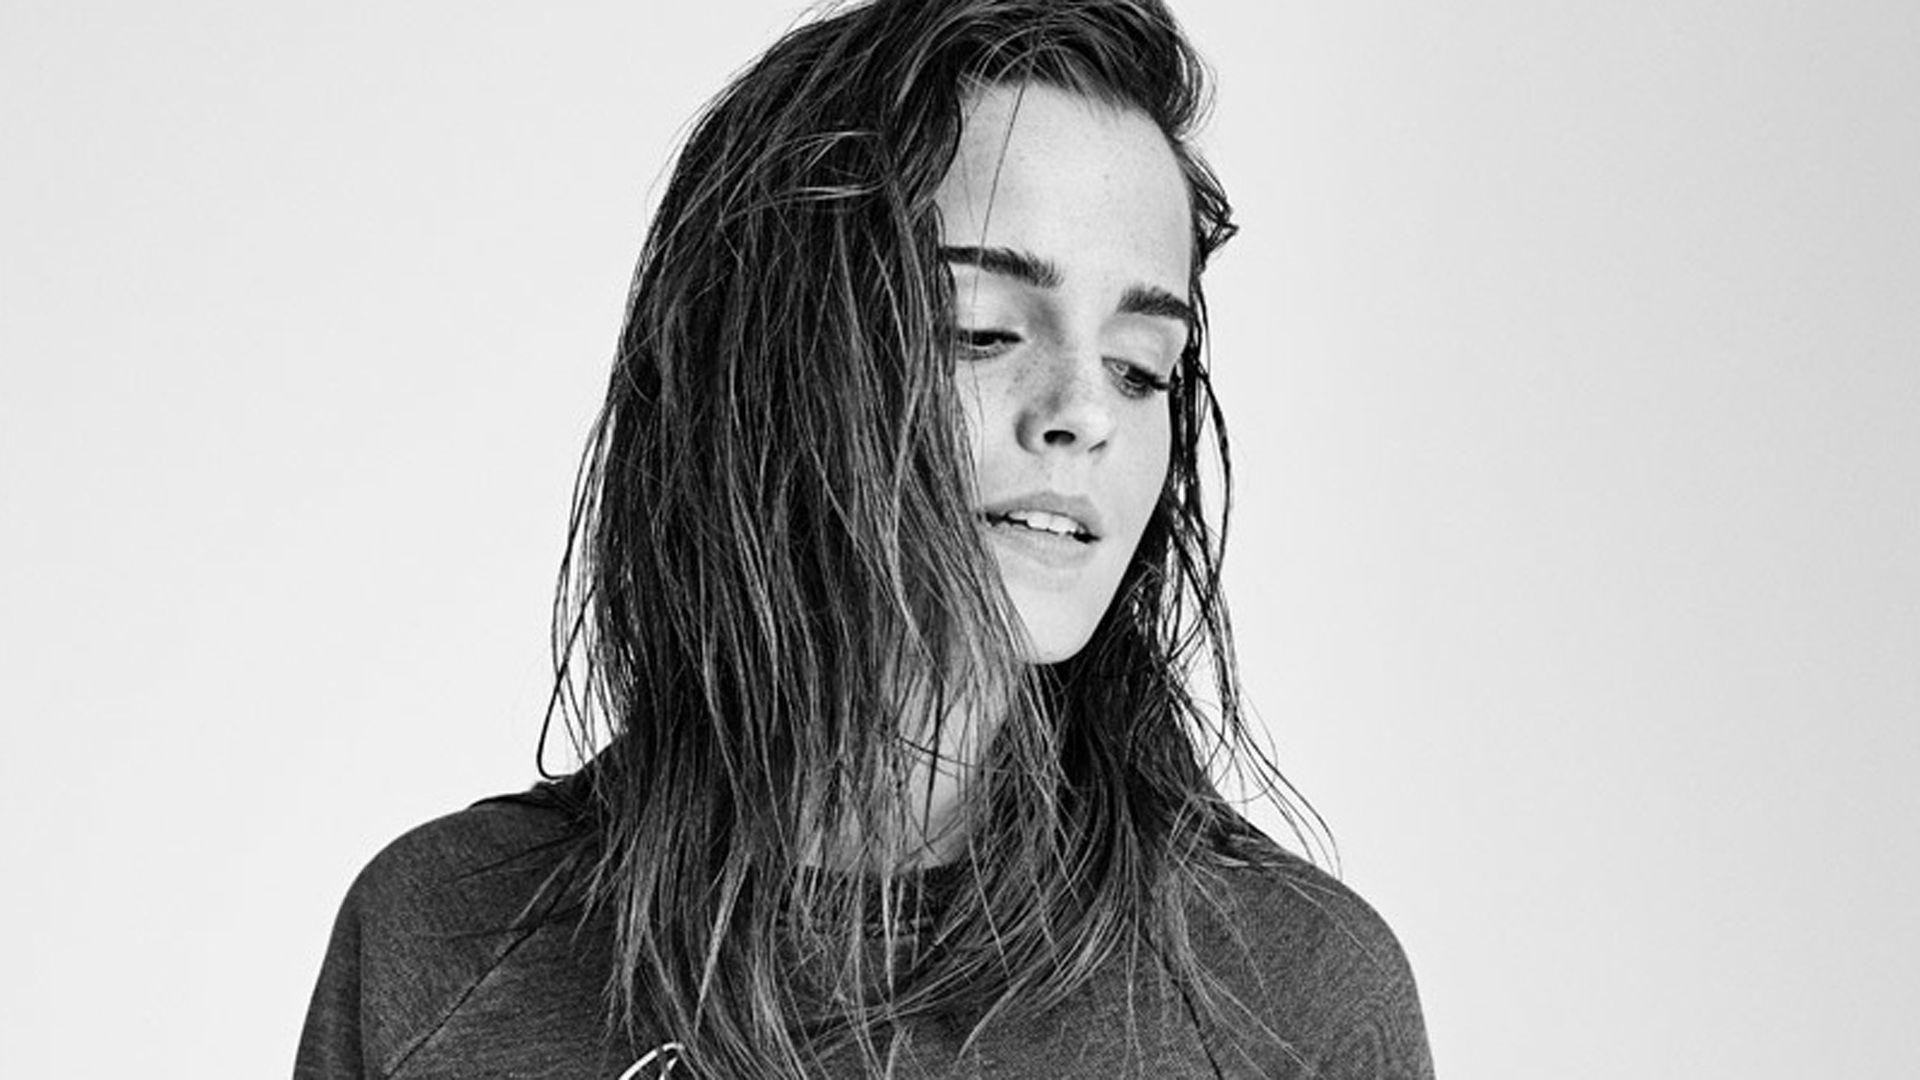 HD Emma Watson Background. Wallpaper, Background, Image, Art